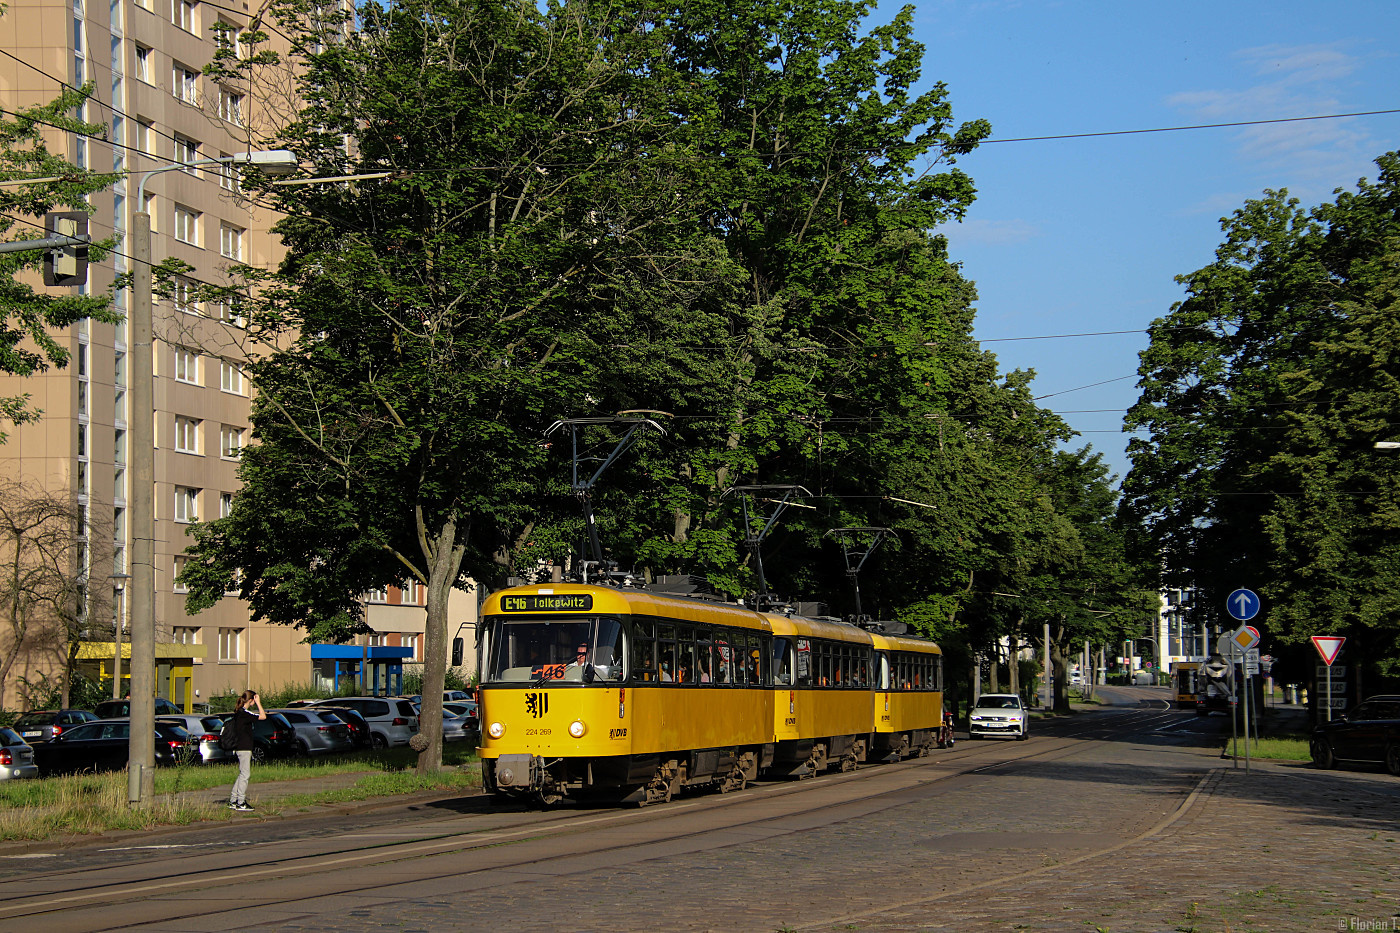 Tatra T4D-MT #224 269